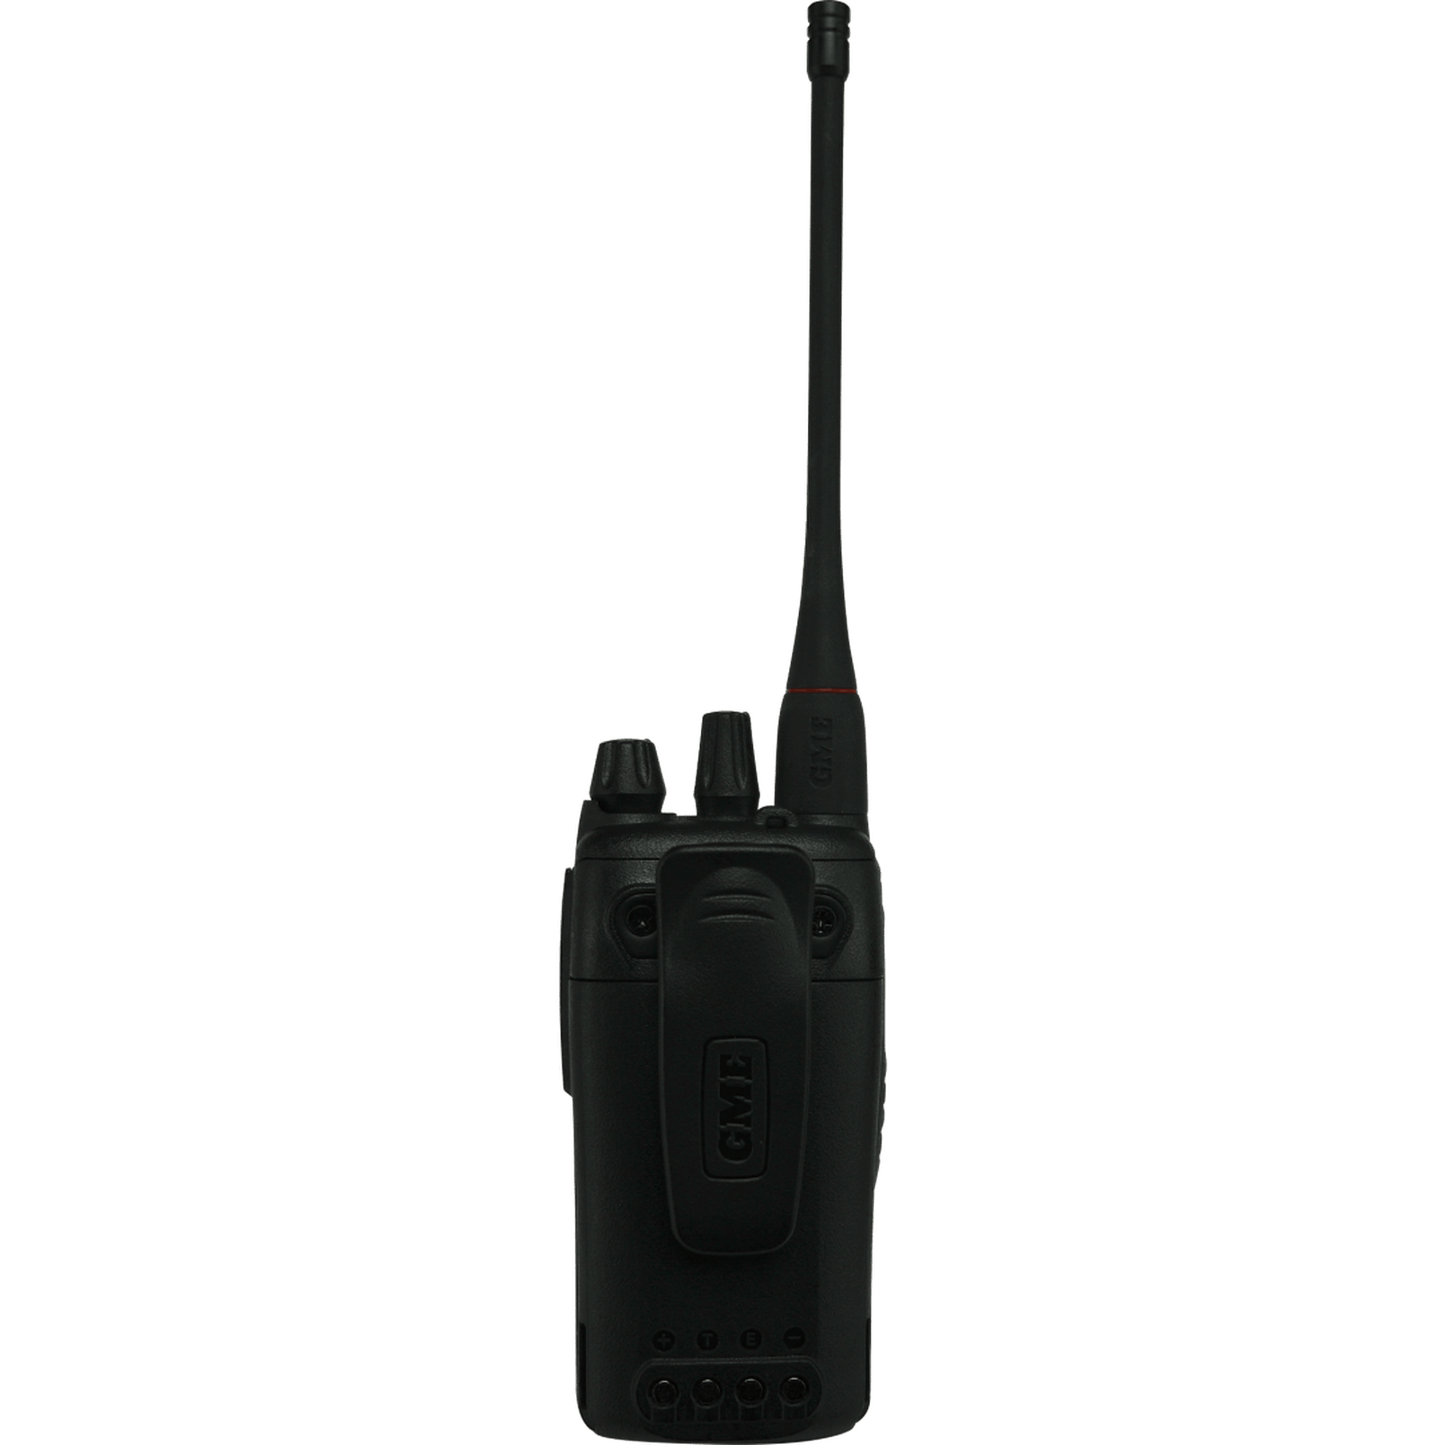 TX6600S - 5 WATT UHF CB HANDHELD RADIO – IP67